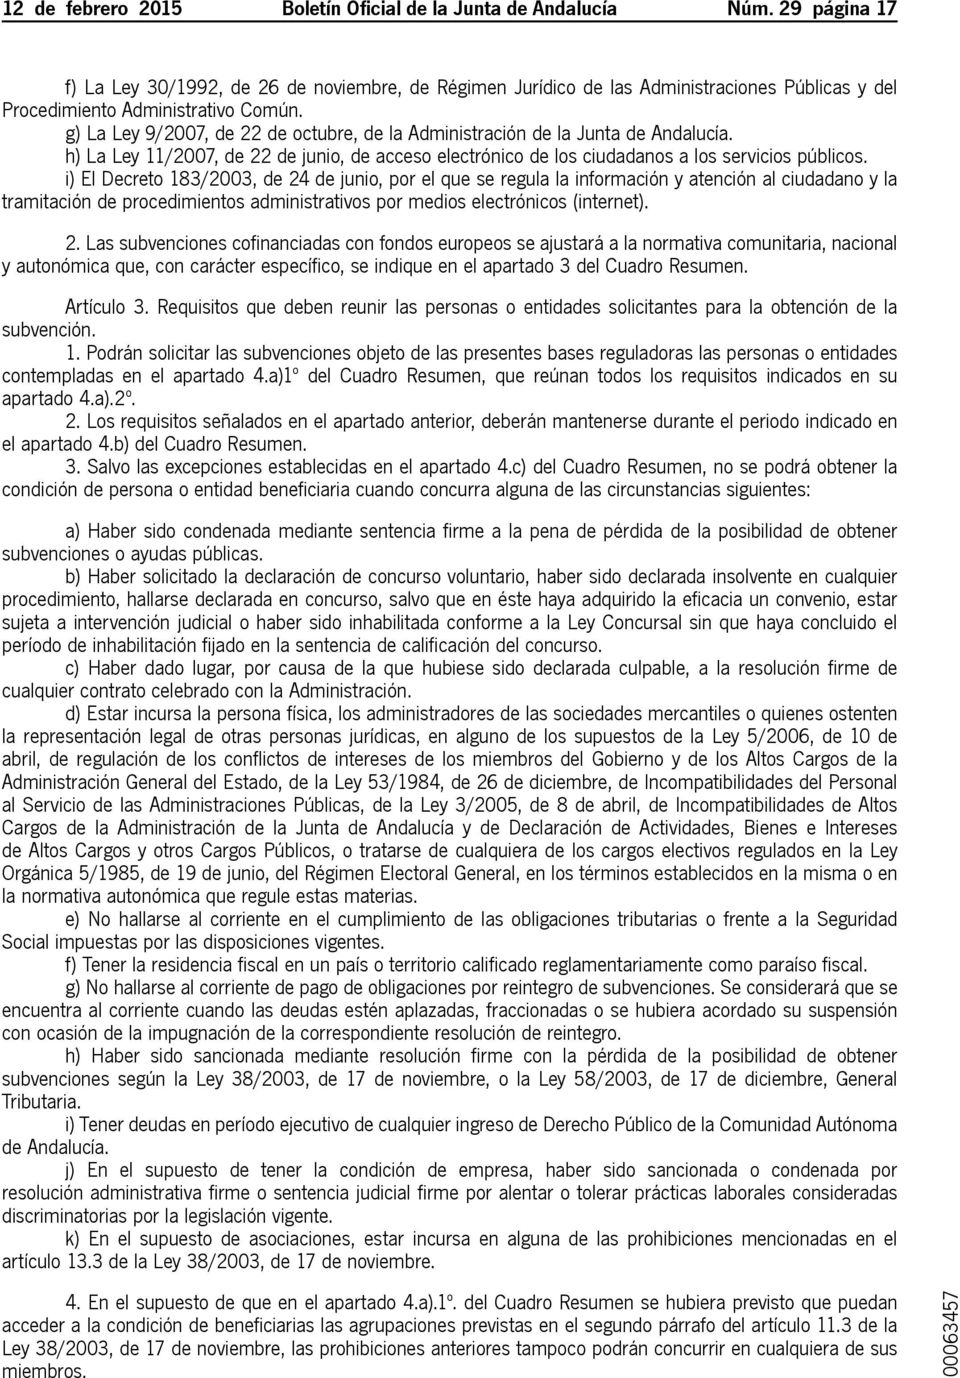 g) La Ley 9/2007, de 22 de octubre, de la Administración de la Junta de Andalucía. h) La Ley 11/2007, de 22 de junio, de acceso electrónico de los ciudadanos a los servicios públicos.